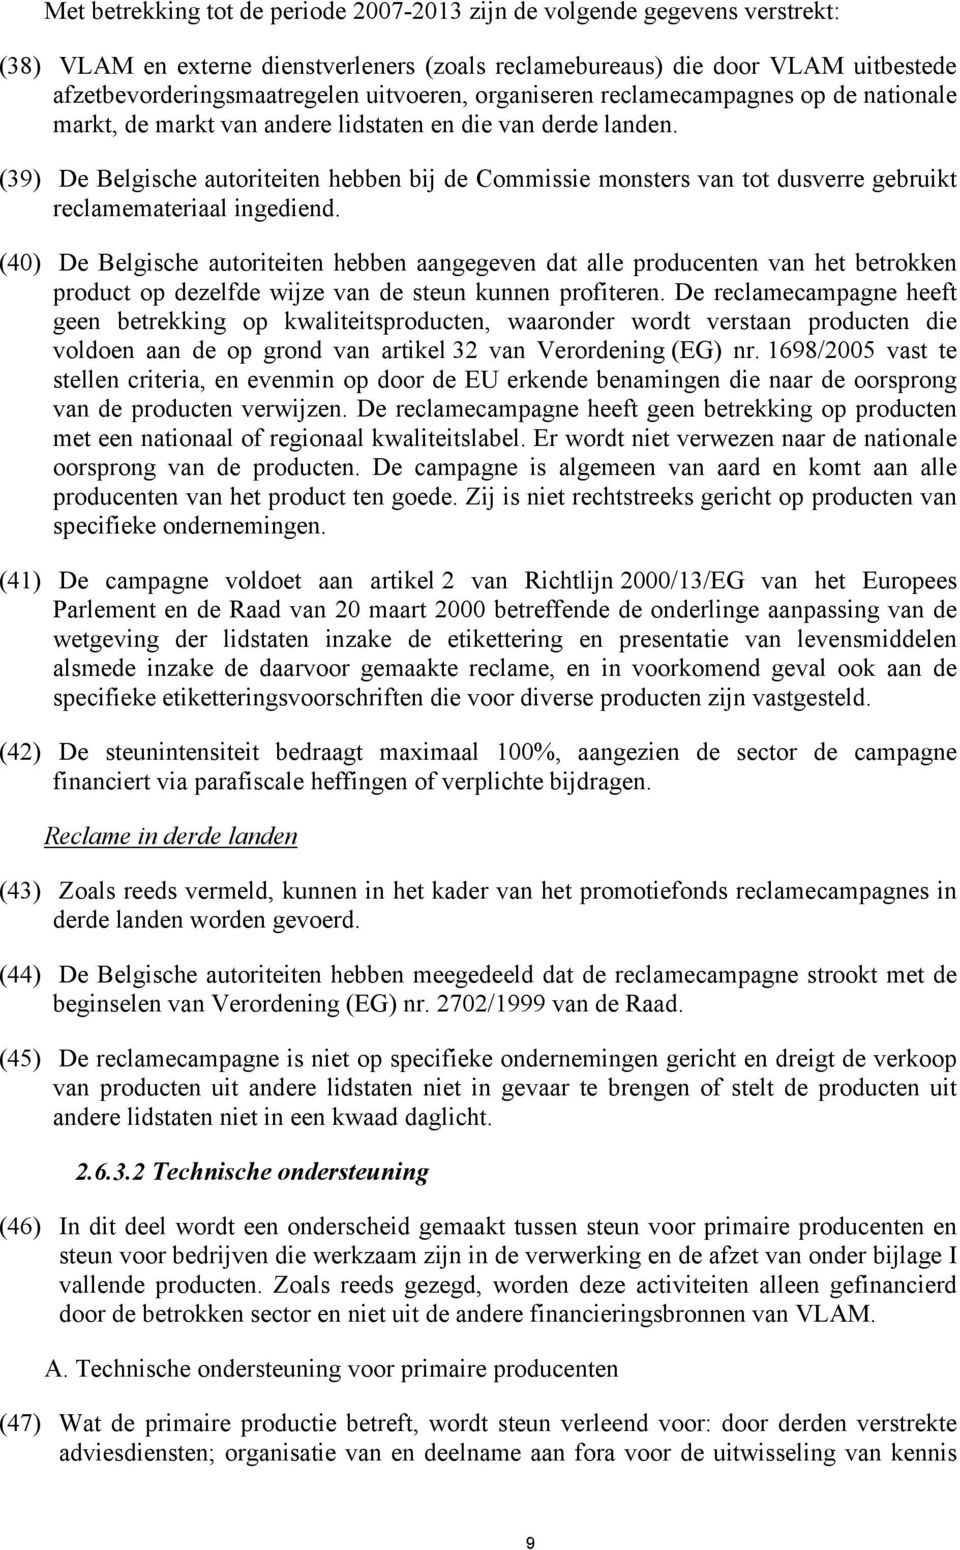 (39) De Belgische autoriteiten hebben bij de Commissie monsters van tot dusverre gebruikt reclamemateriaal ingediend.